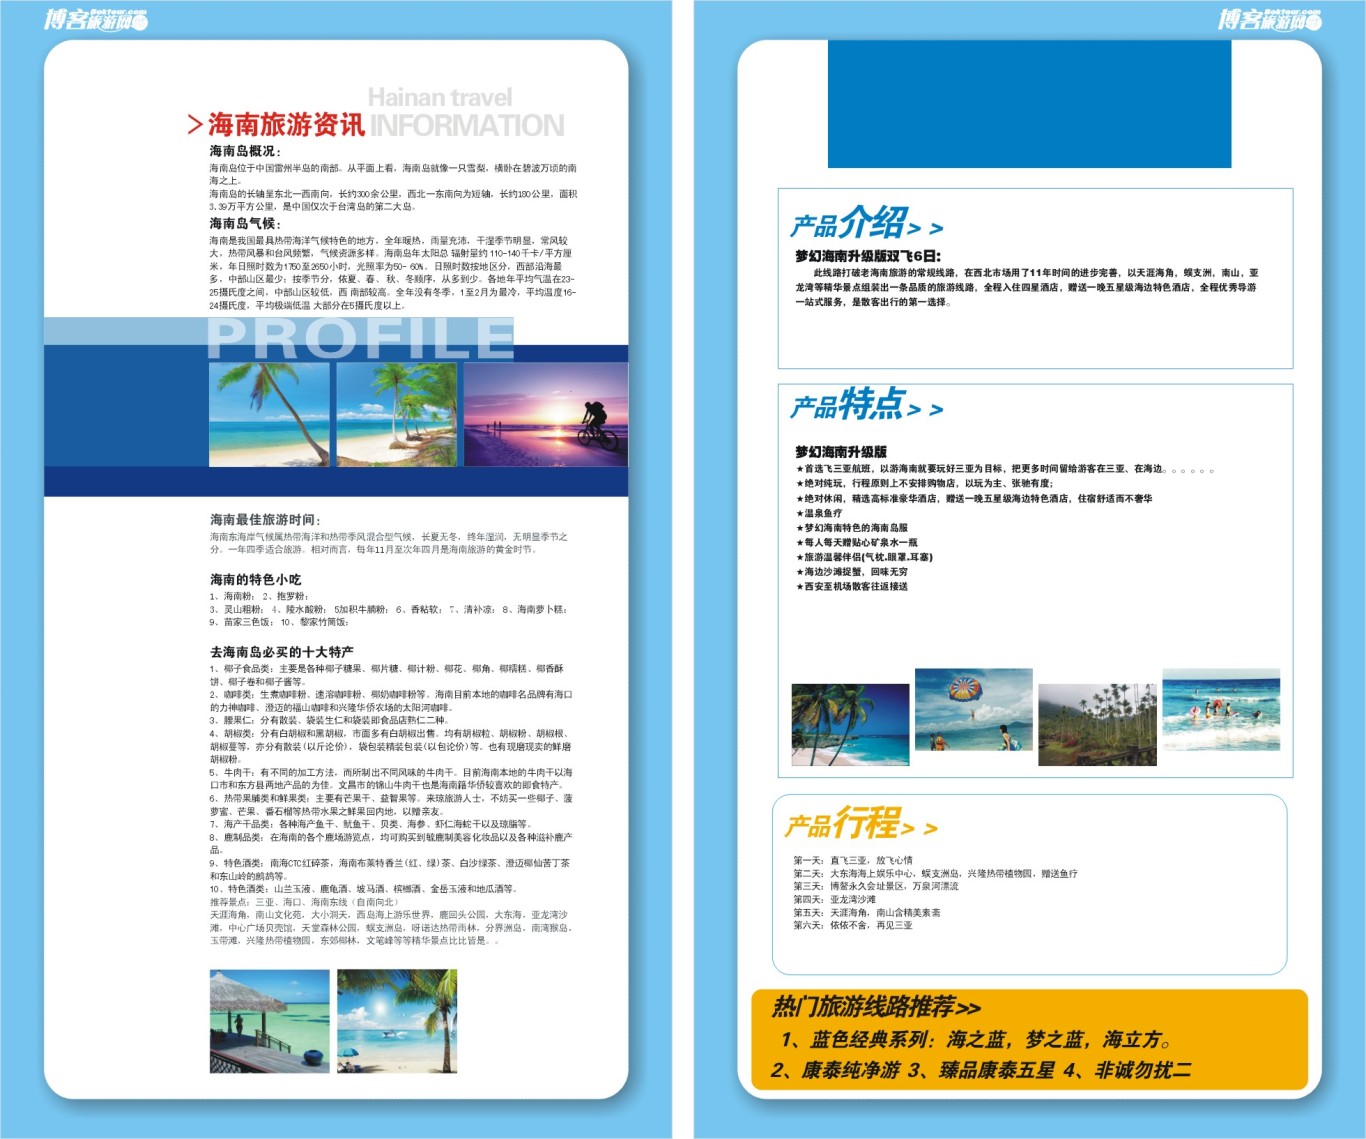 博客旅游网宣传手册设计图2